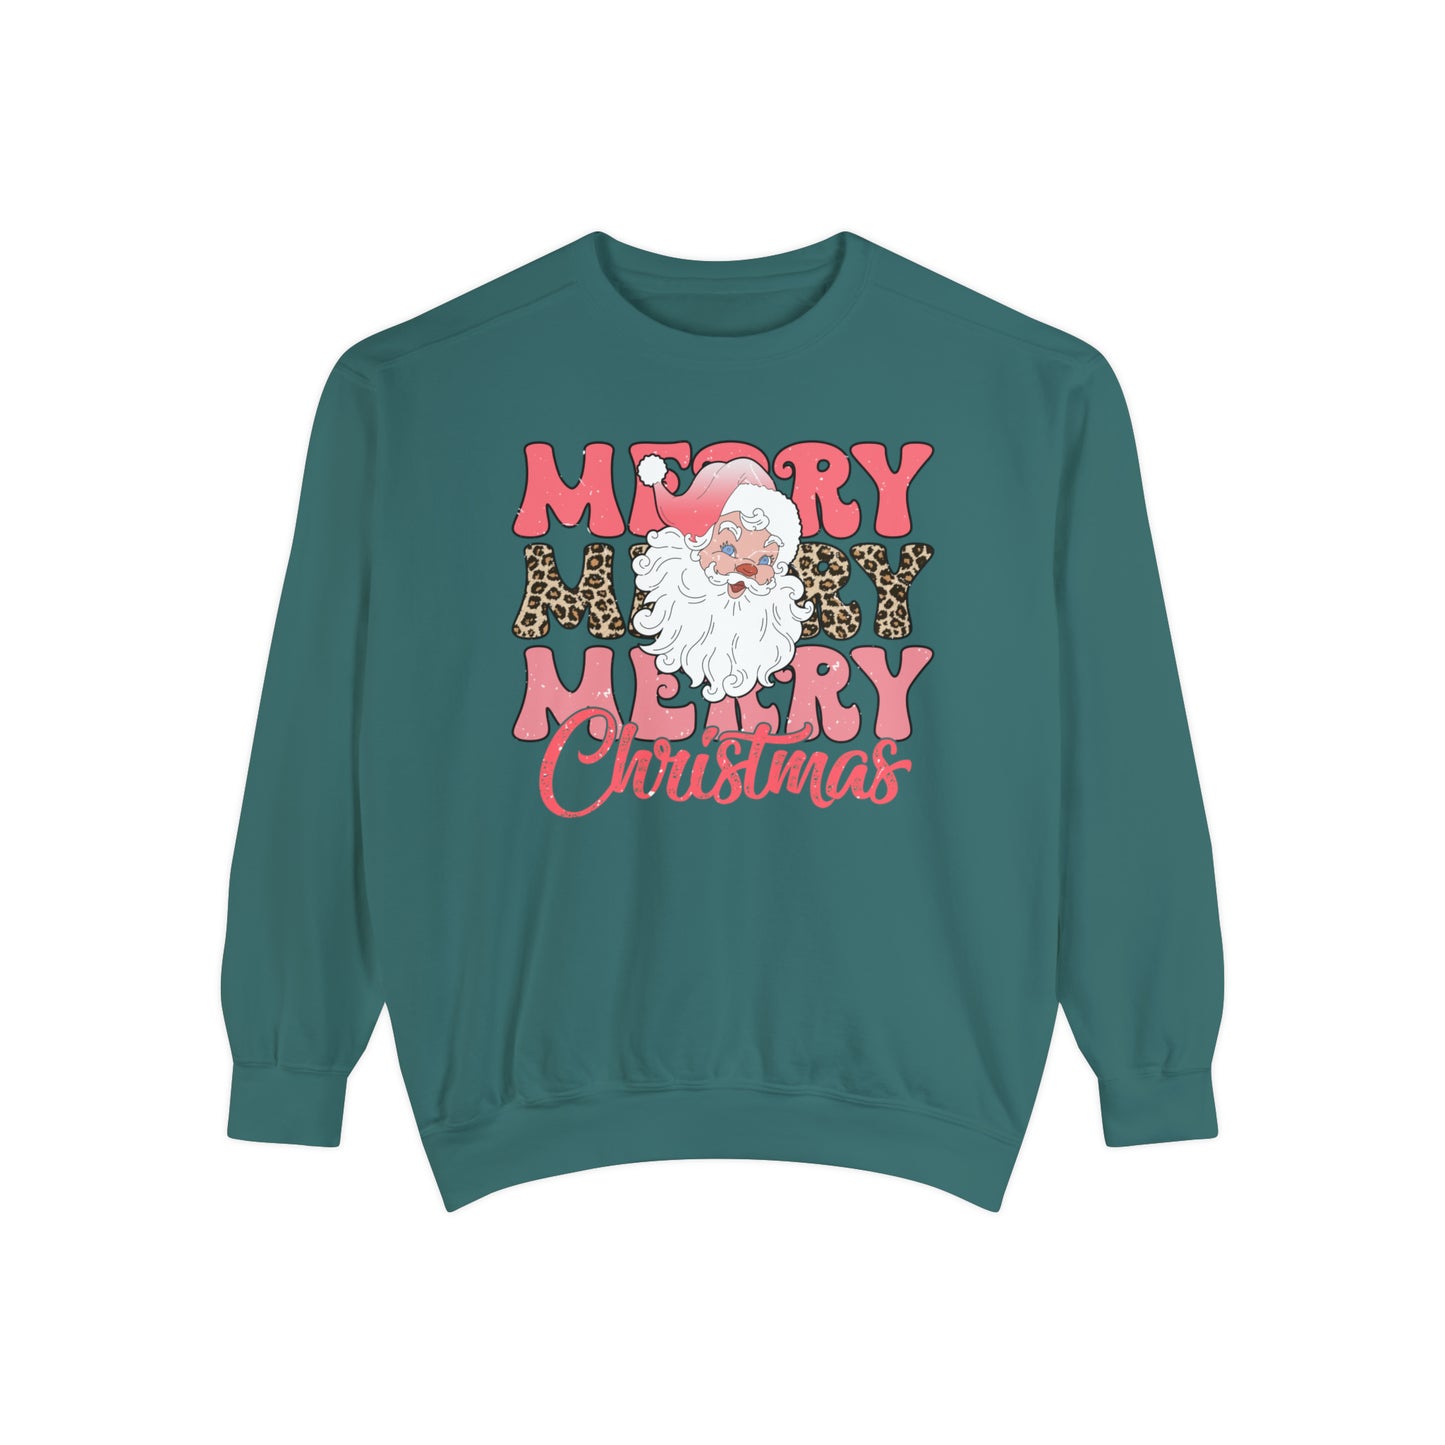 Merry Merry Merry Chistmas Sweatshirt